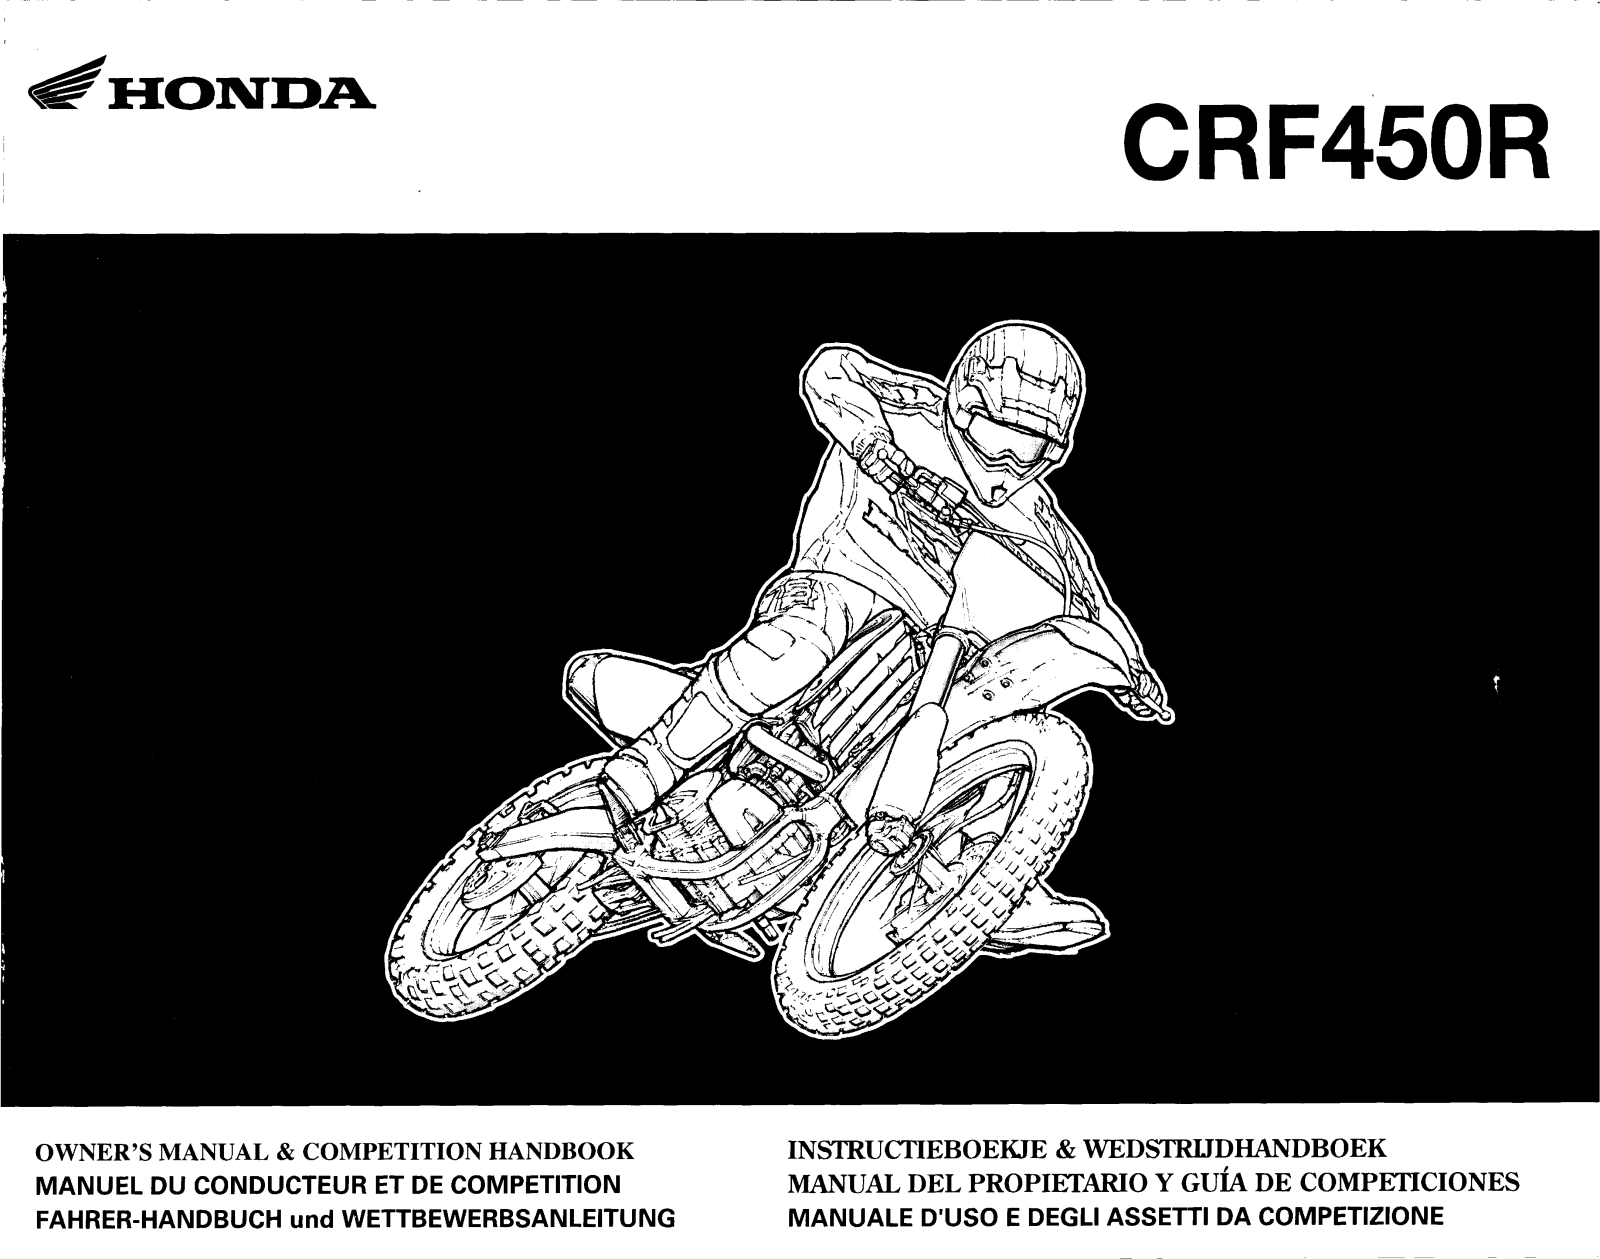 Honda CRF450R Owner's Manual